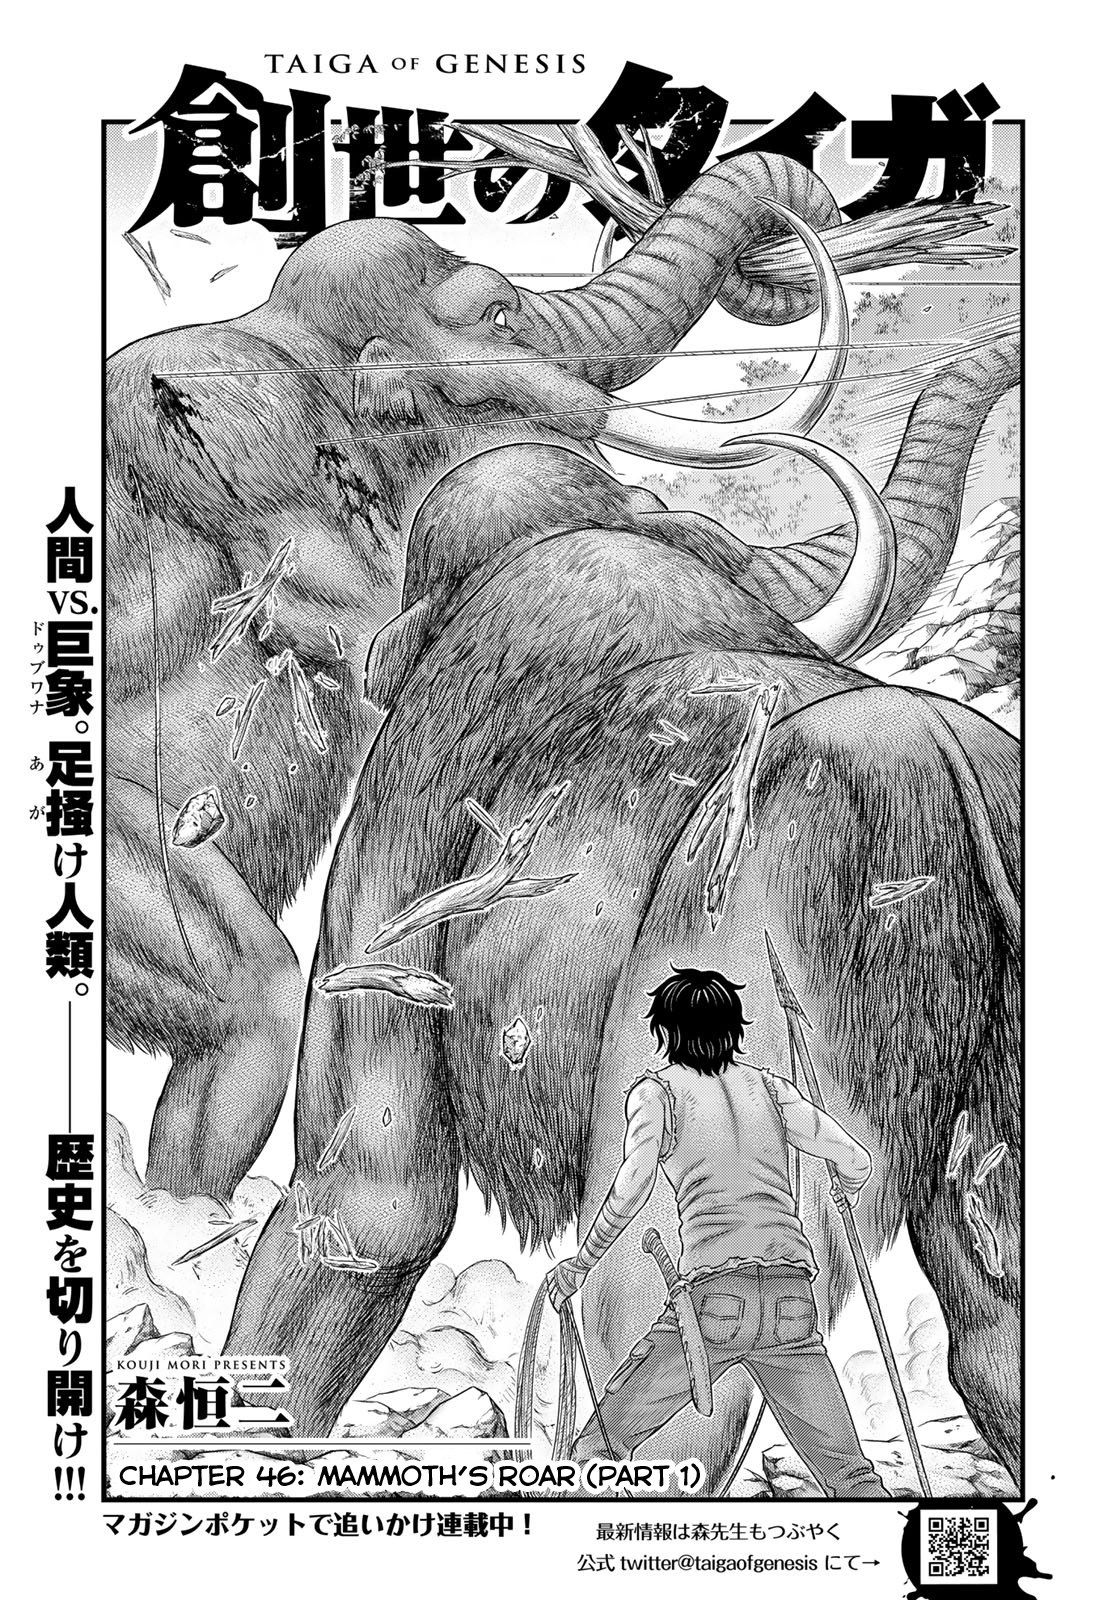 Sousei no Taiga Vol. 6 Ch. 46 Mammoth's Roar (Part 1)